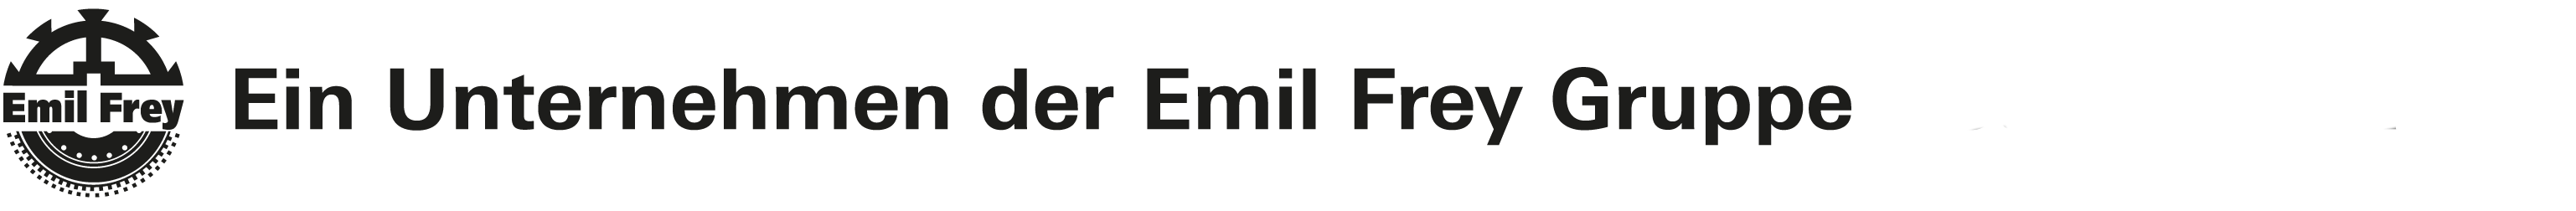 Ein Unternehmen der Emil Frey Gruppe